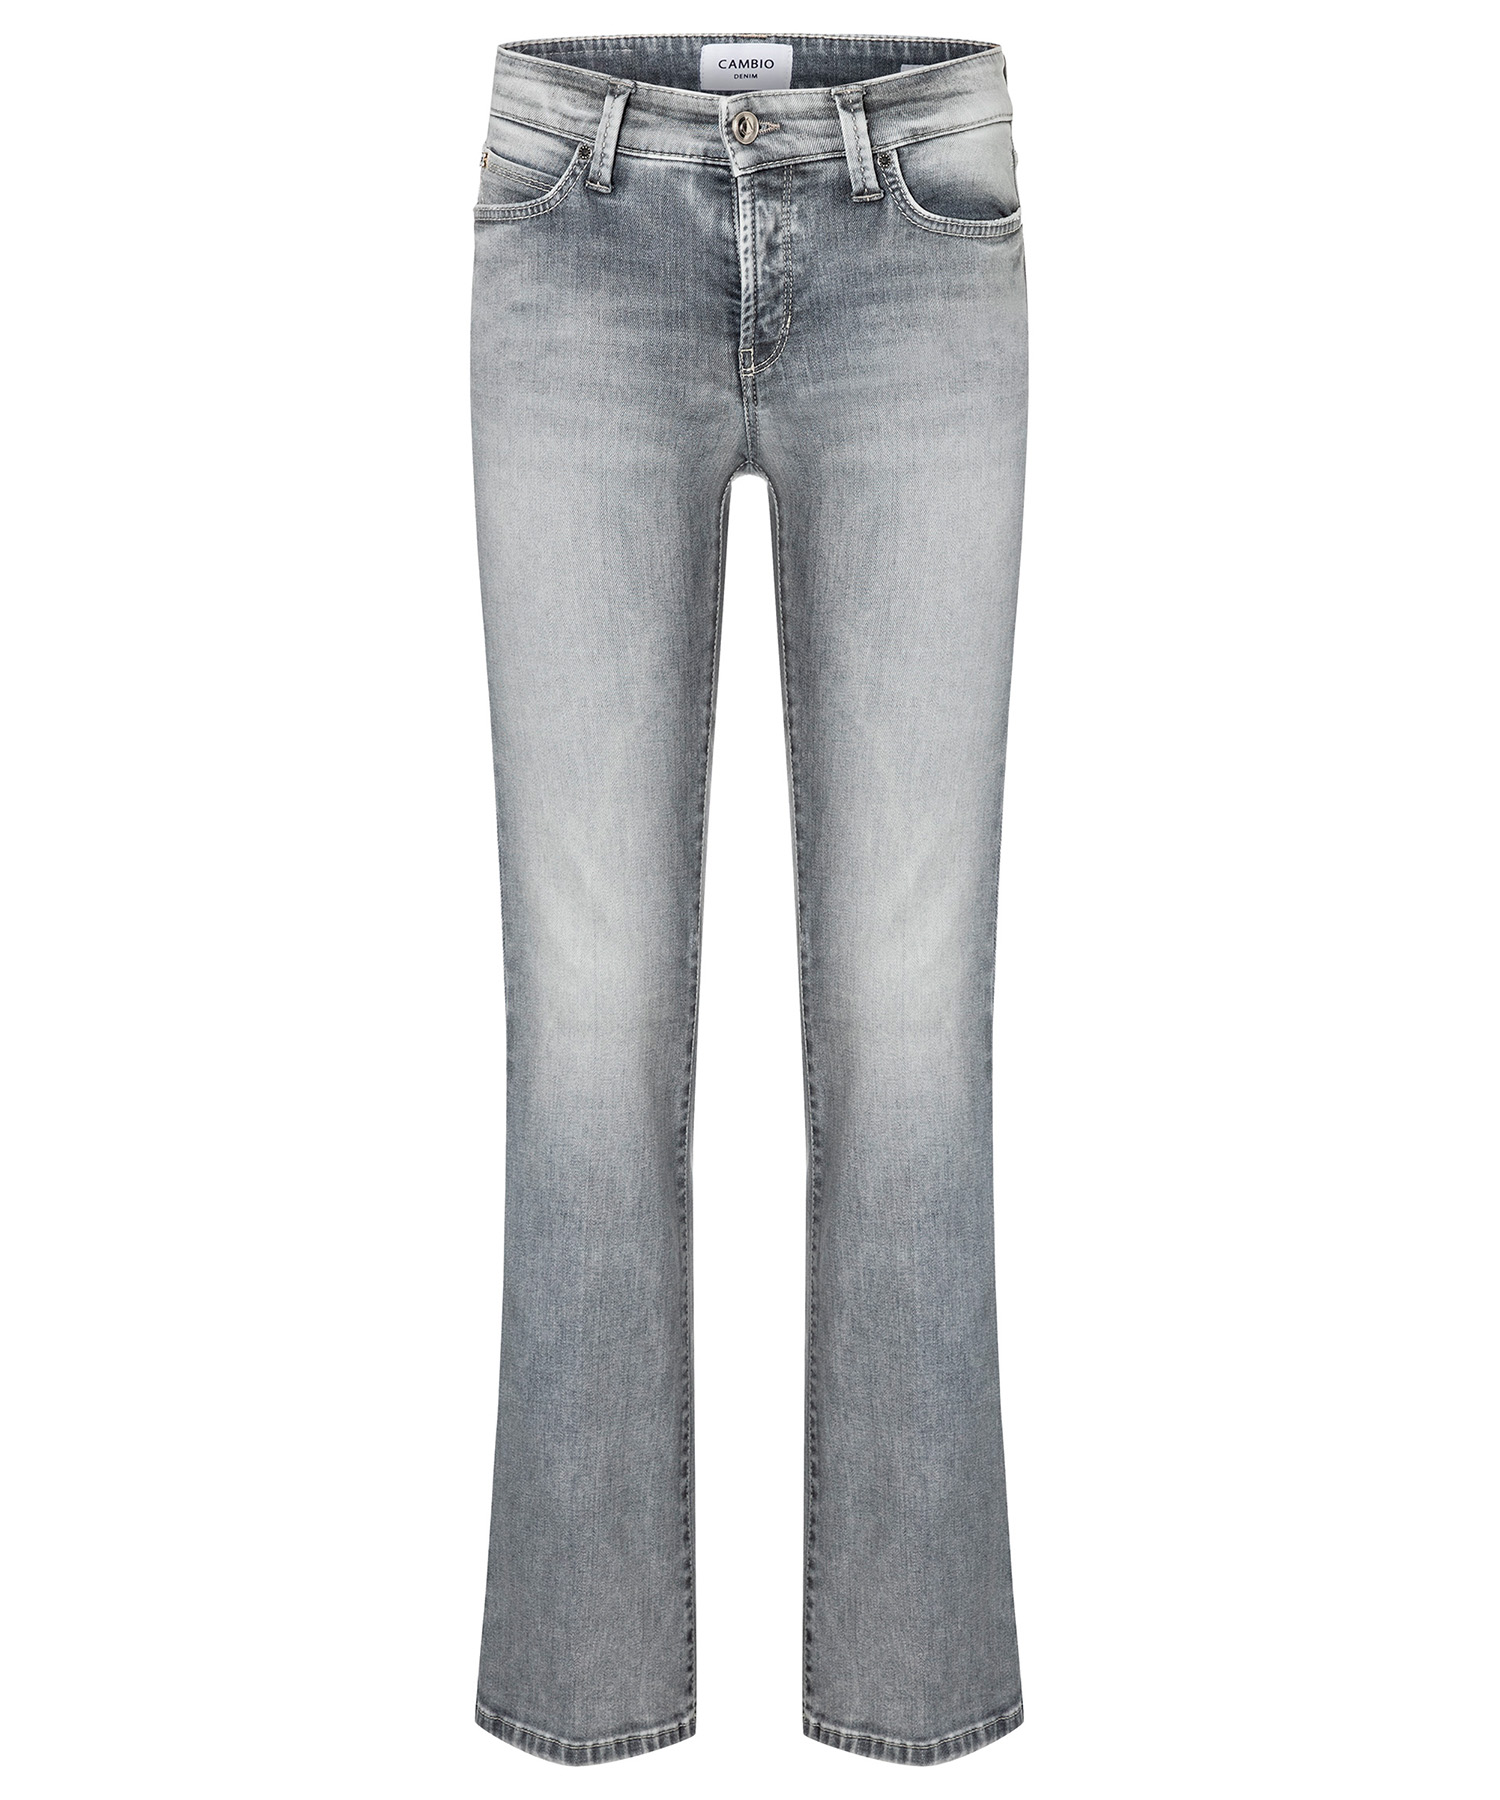 Cambio flared jeans Paris |